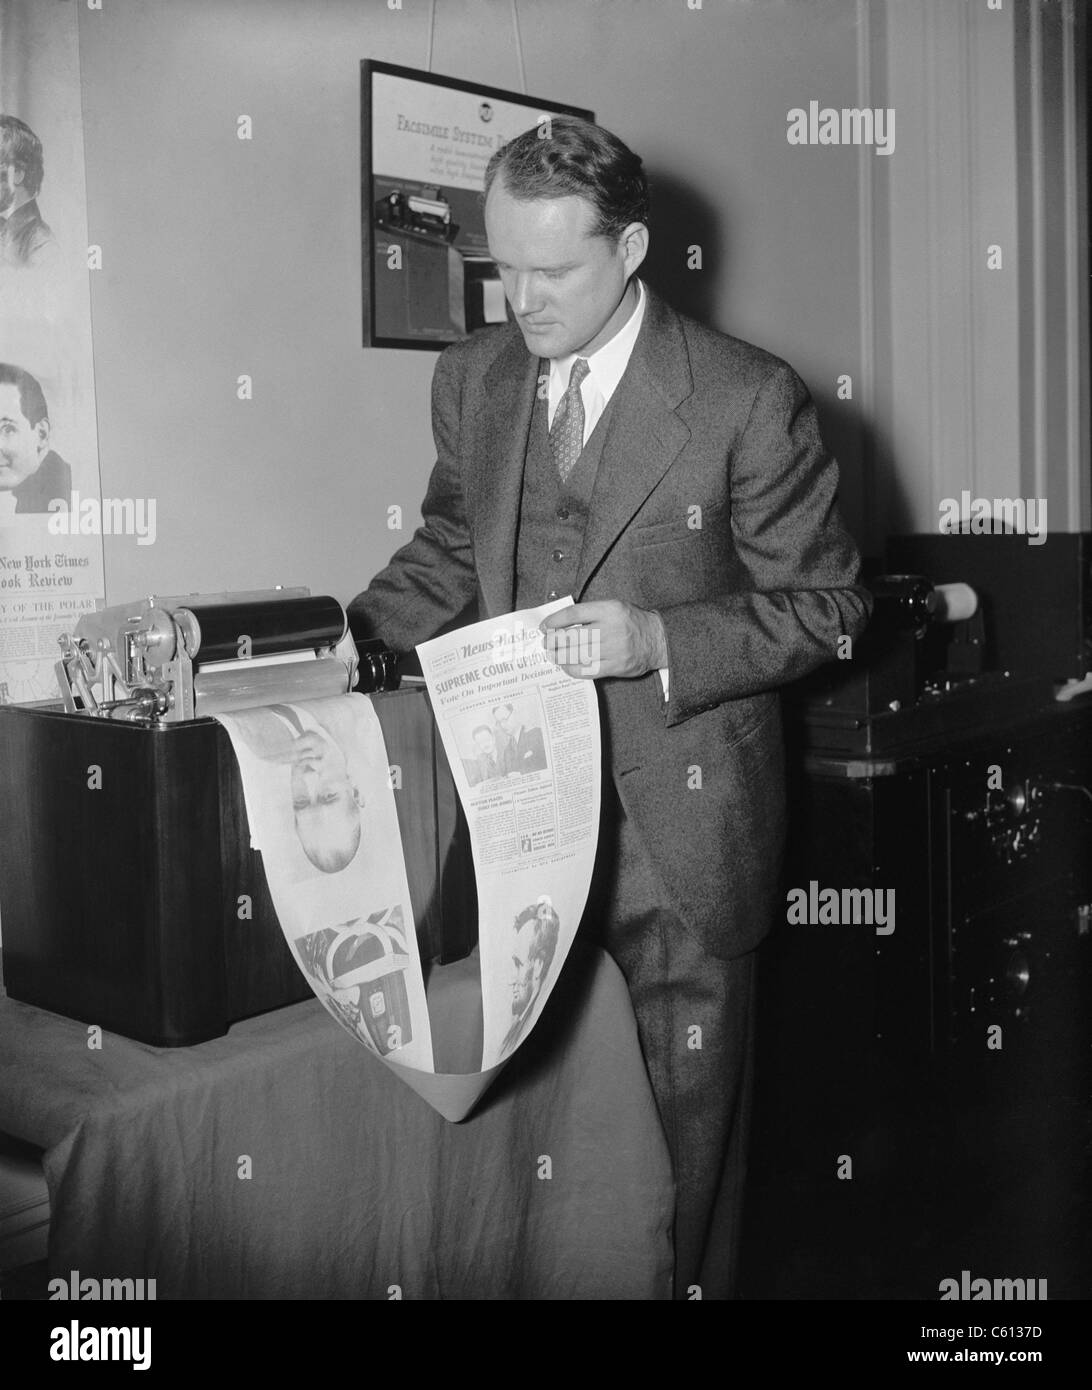 La macchina stampa un sperimentale "giornale radio' presso l'Associazione Nazionale delle emittenti convenzione nel 1938. I costi delle attrezzature e la qualità di stampa ha lavorato contro l'adozione di questa tecnologia da parte del pubblico in generale. Foto Stock